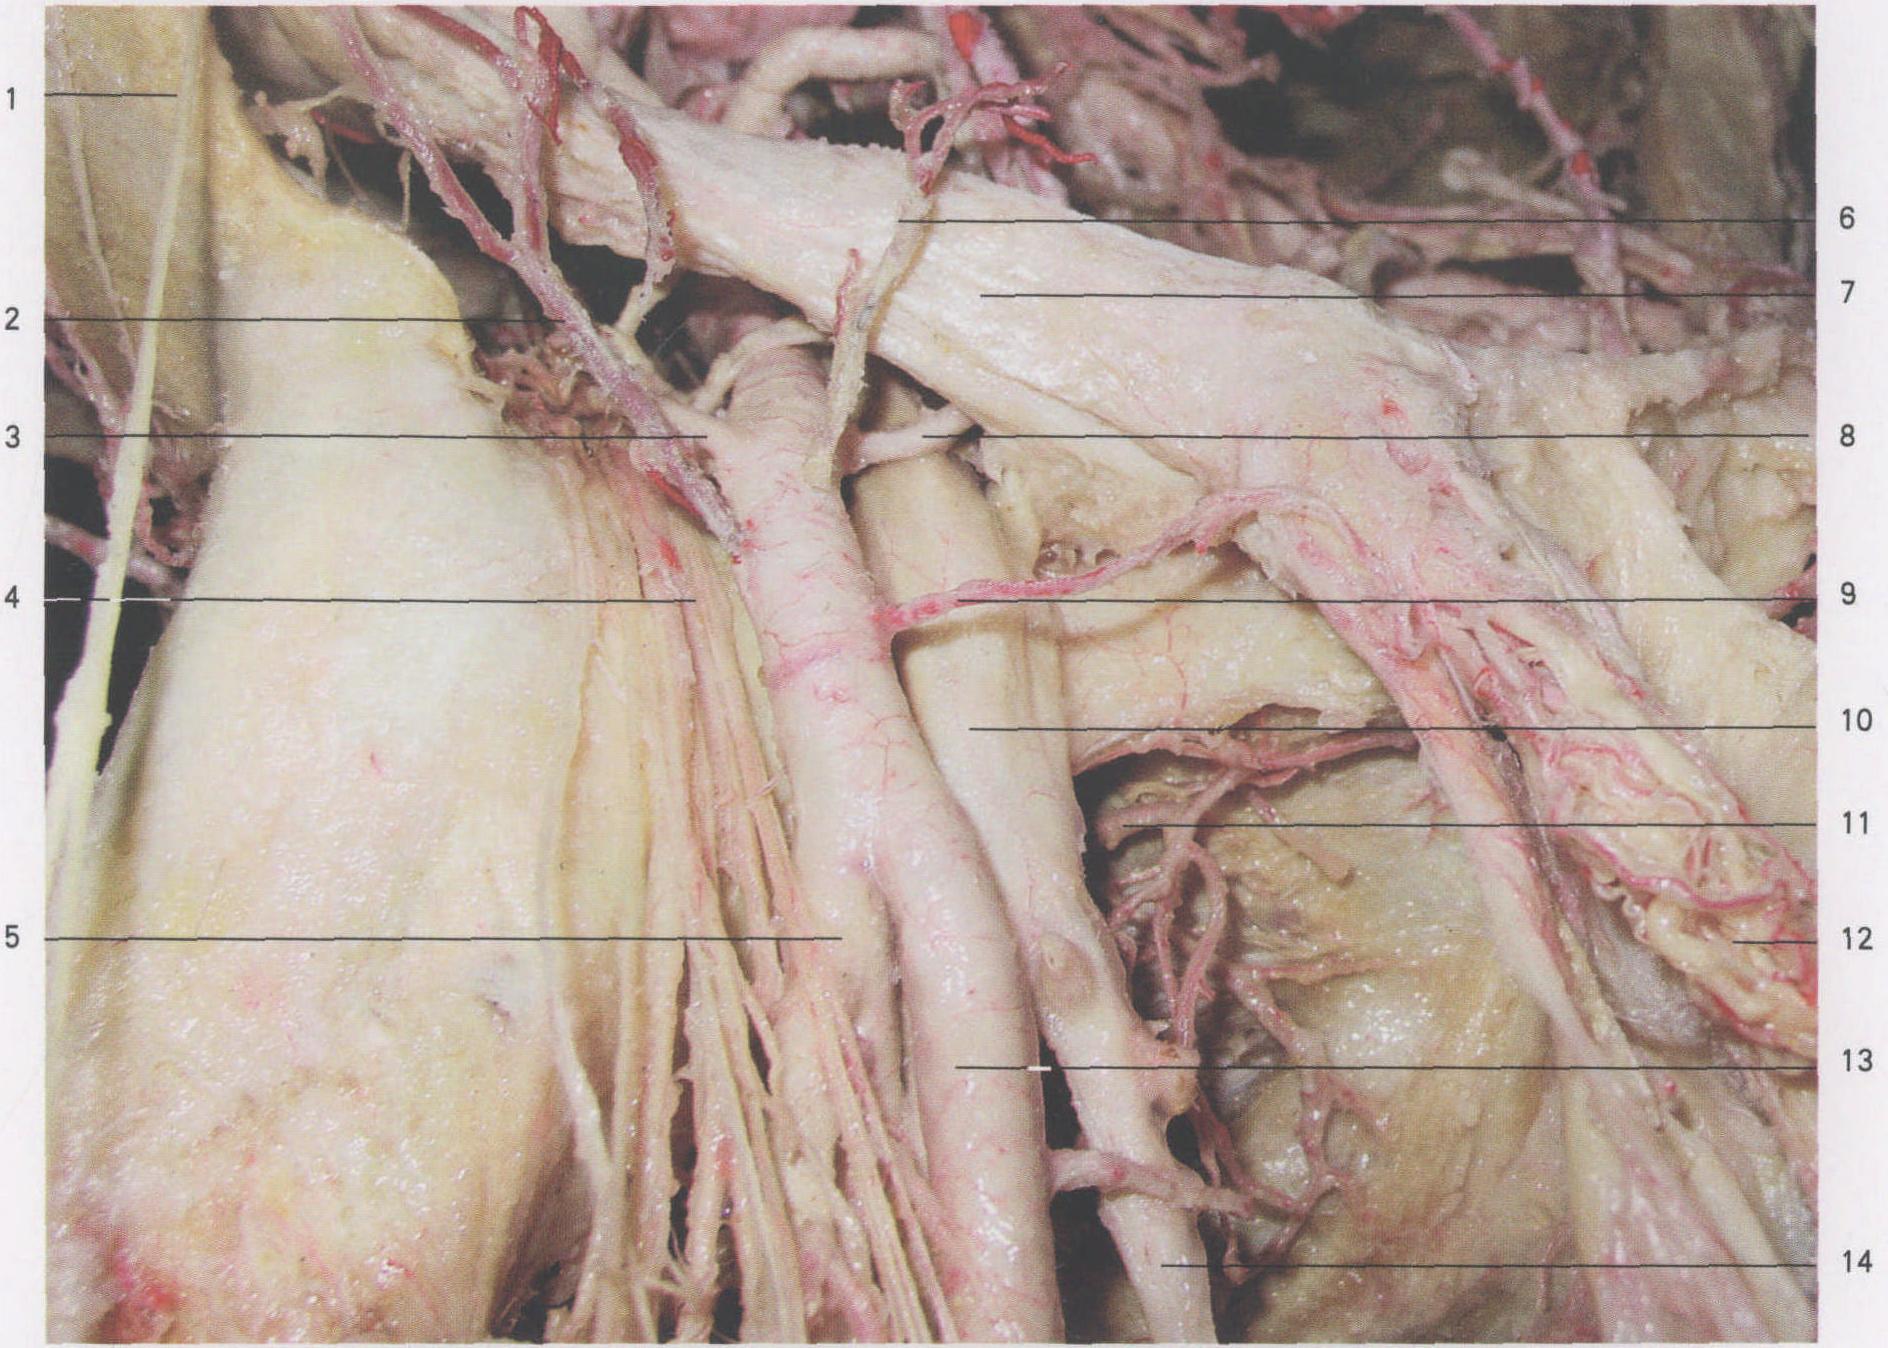 图4-56 股后部肌肉、血管和神经(1)-外科学-医学